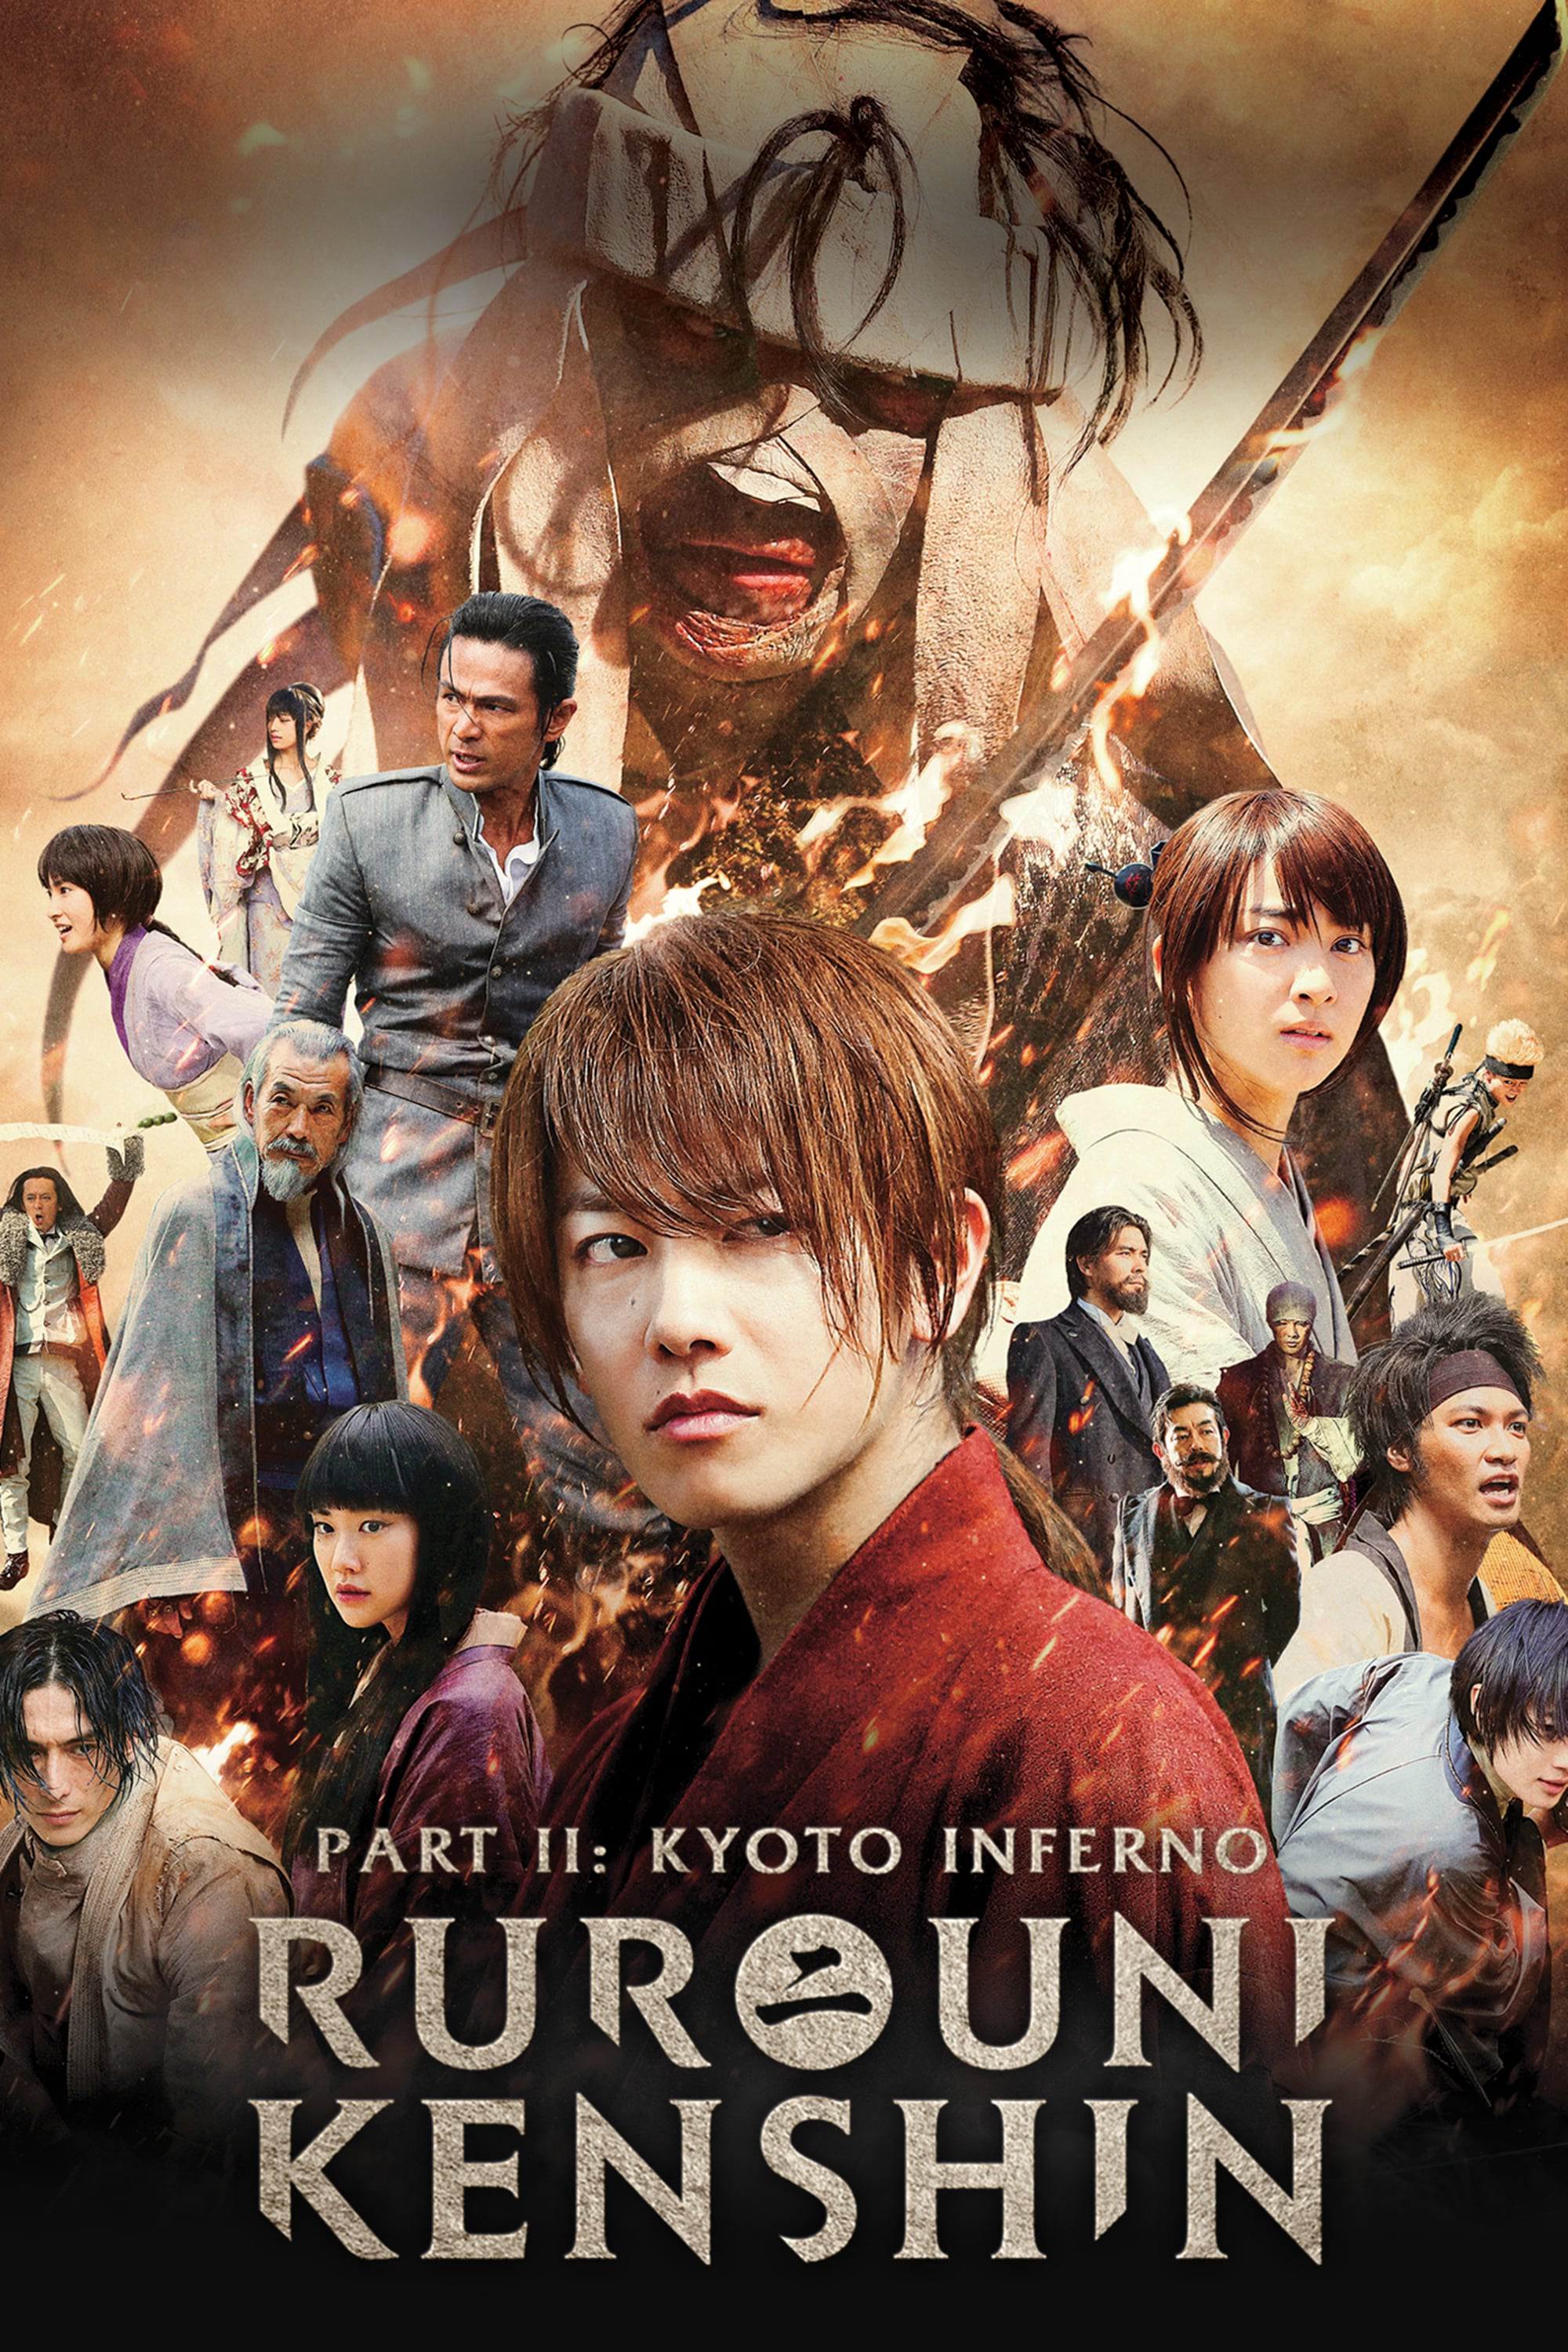 Poster Phim Lãng khách Kenshin 2: Đại Hỏa Kyoto (Rurouni Kenshin Part II: Kyoto Inferno)